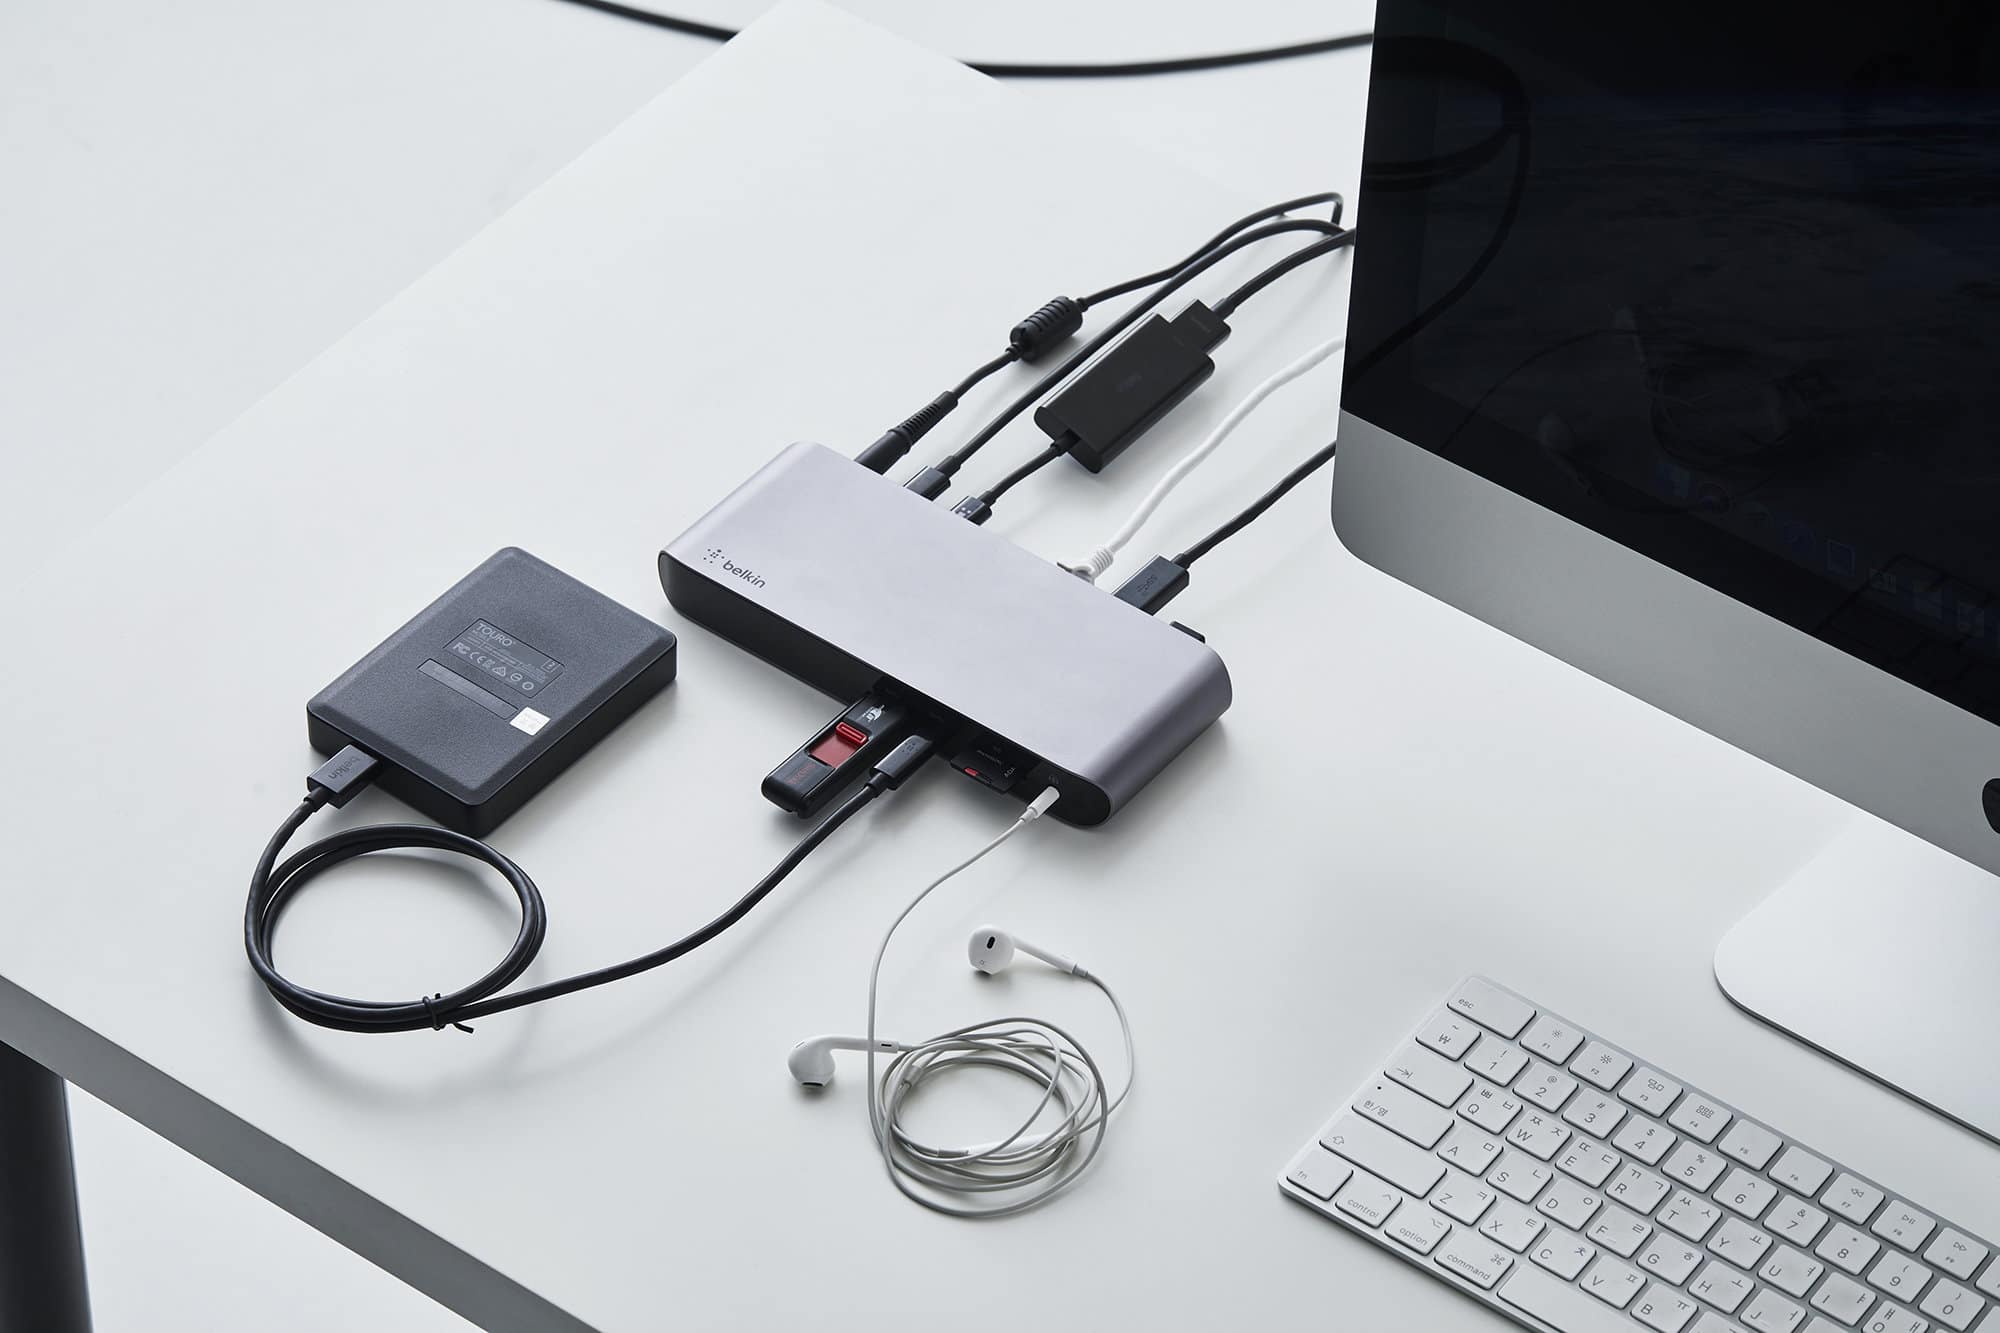 เบลคิน (Belkin) เปิดตัว Thunderbolt 3 Dock Pro รุ่นล่าสุด และอุปกรณ์เสริมกลุ่ม USB-C Adapters ที่จะช่วยสร้างสเตชั่นการทำงานขั้นสุดได้อย่างมืออาชีพ 1